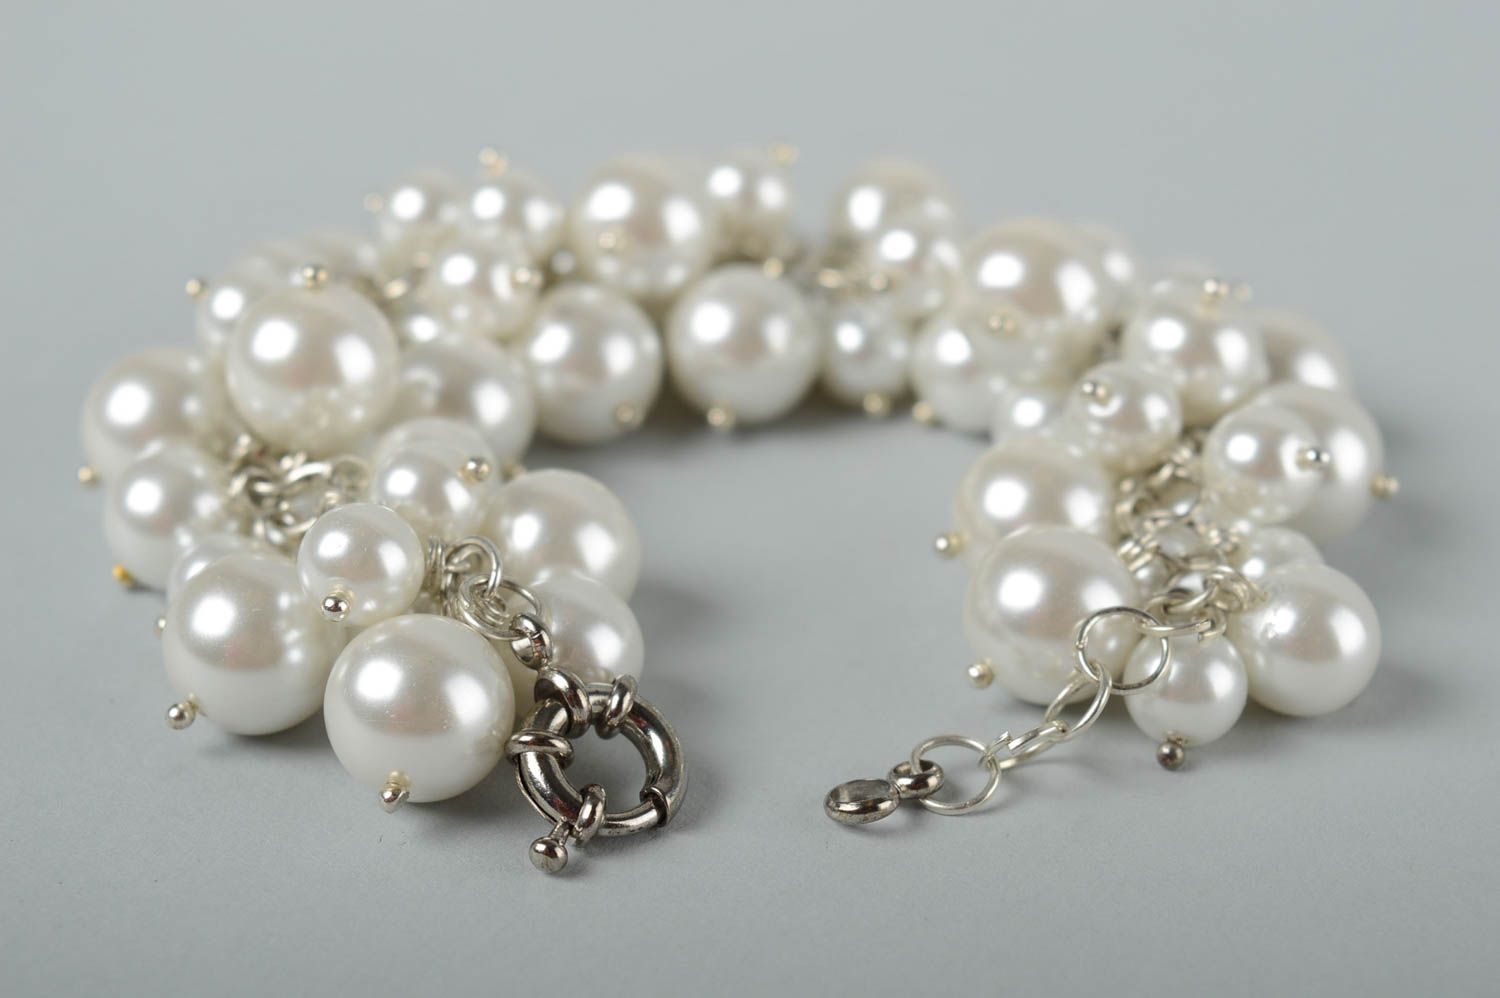 Handmade white beads chain bracelet for women photo 3